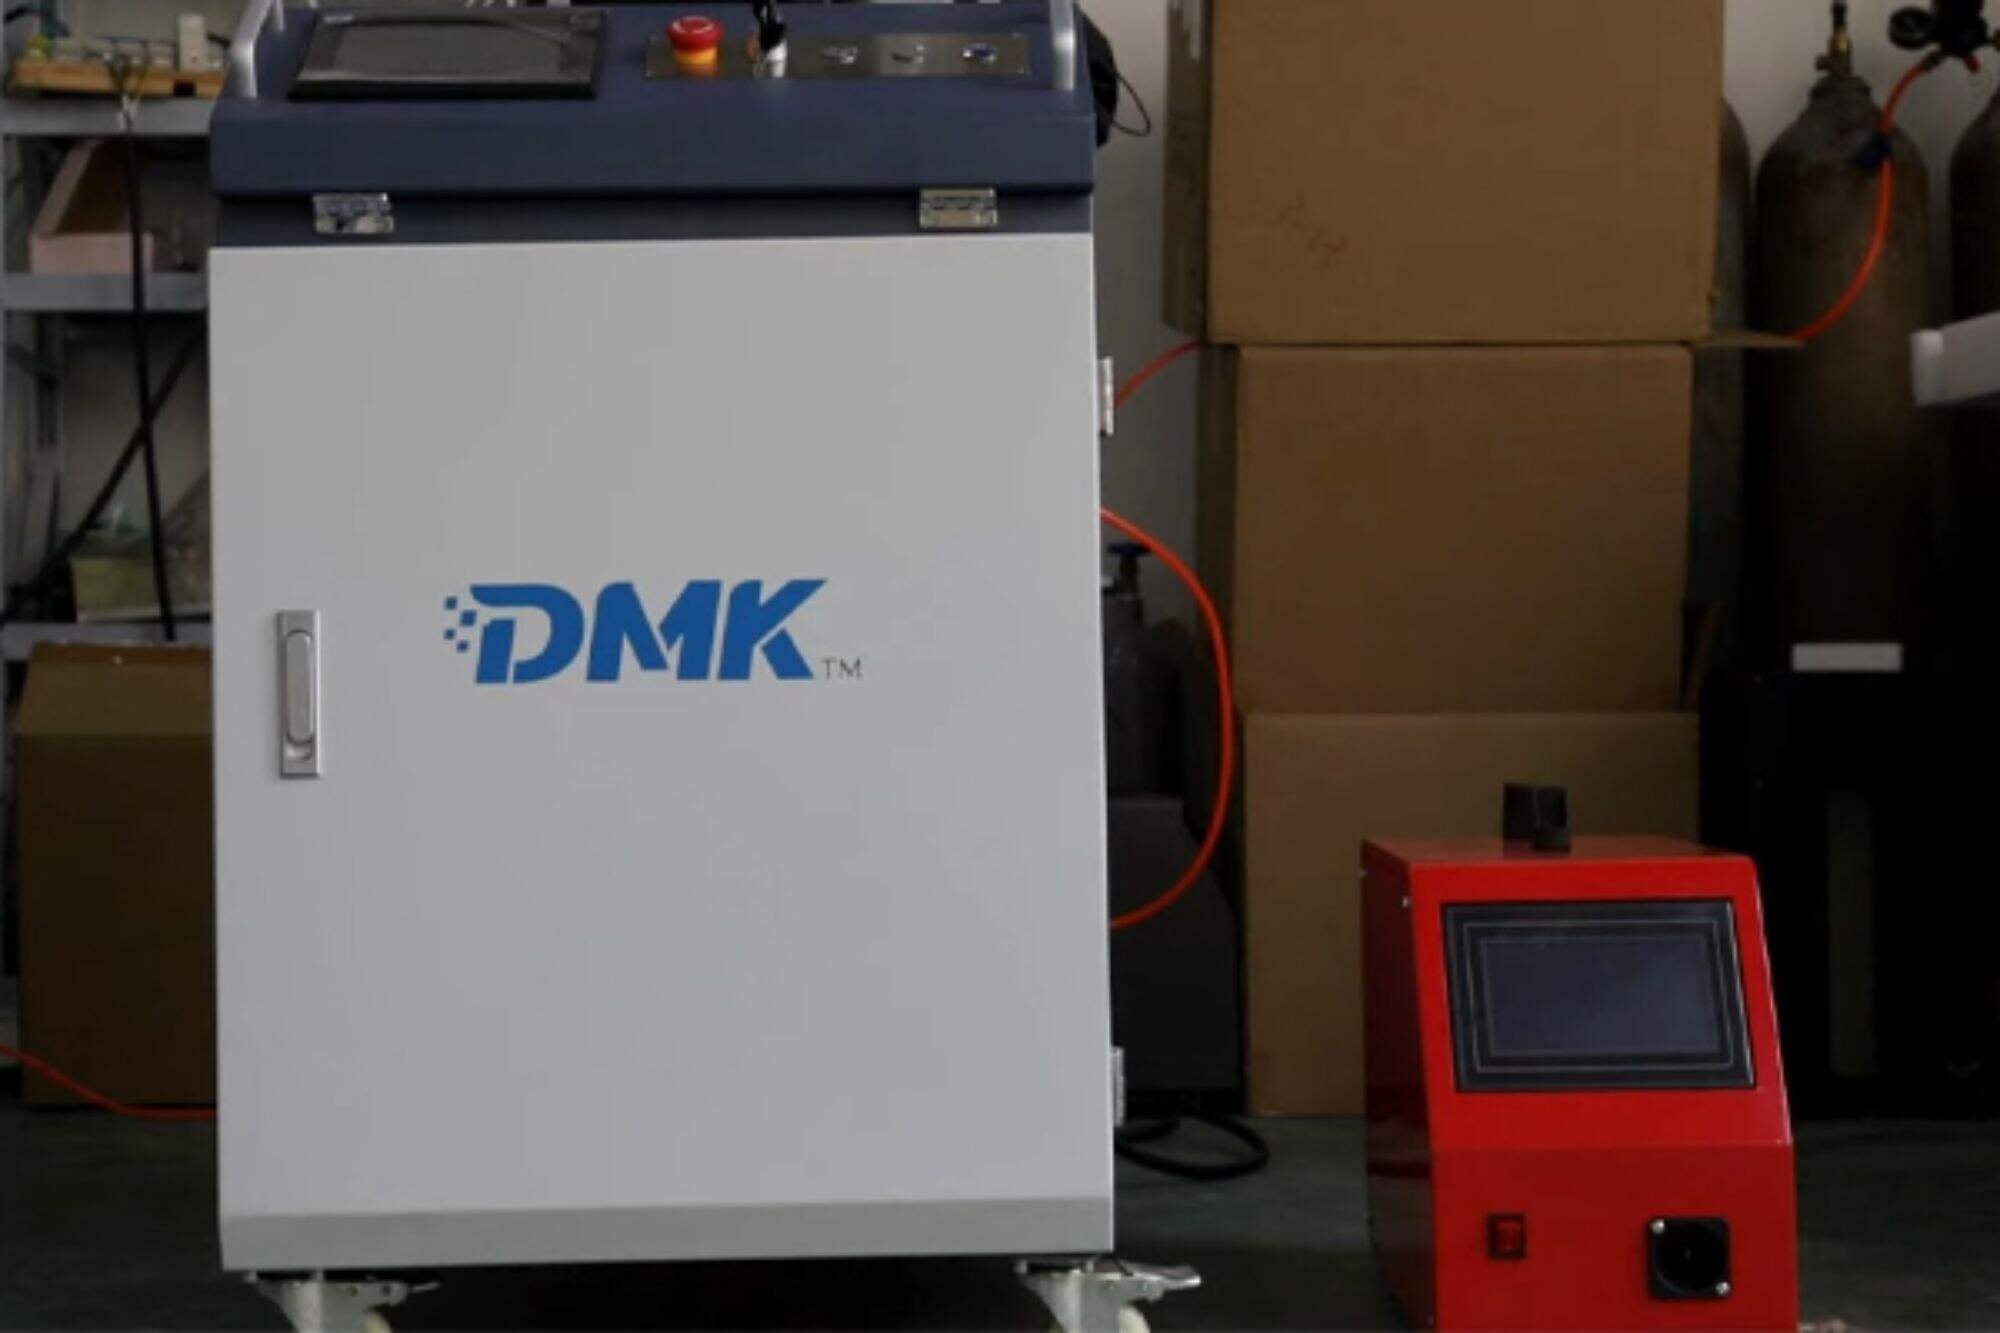 DMK1500W water-cooled handheld laser welder installation tutorial